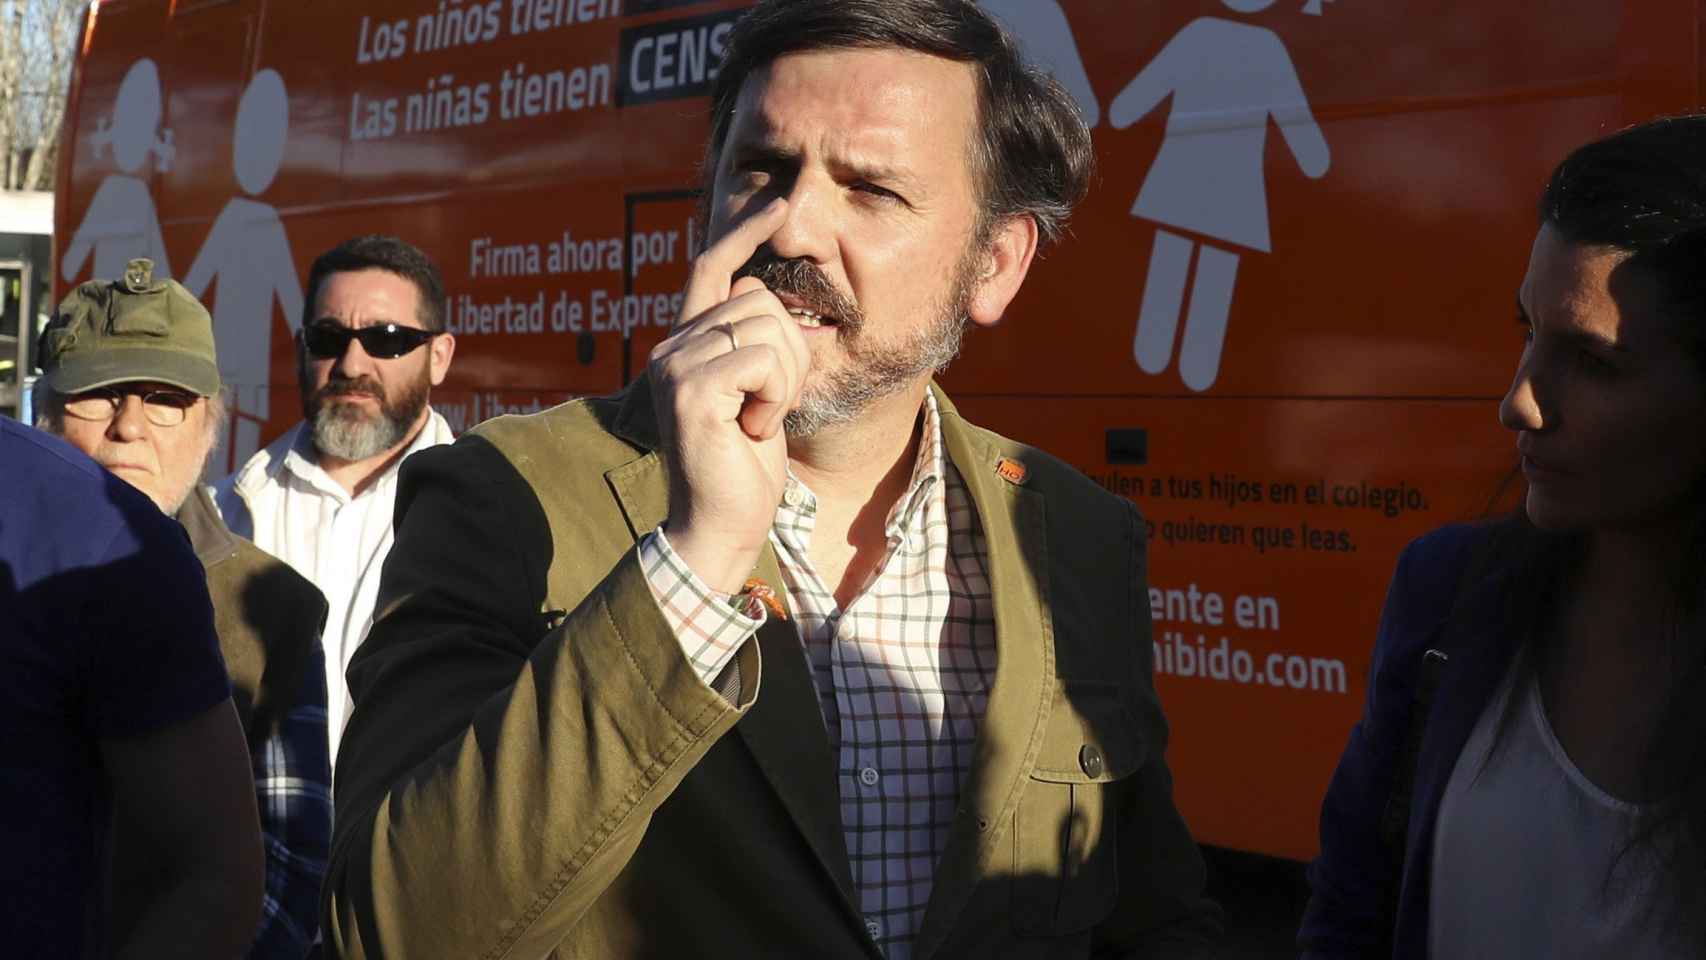 El presidente de HazteOír, Ignacio Arsasua, junto al autobús denunciado.